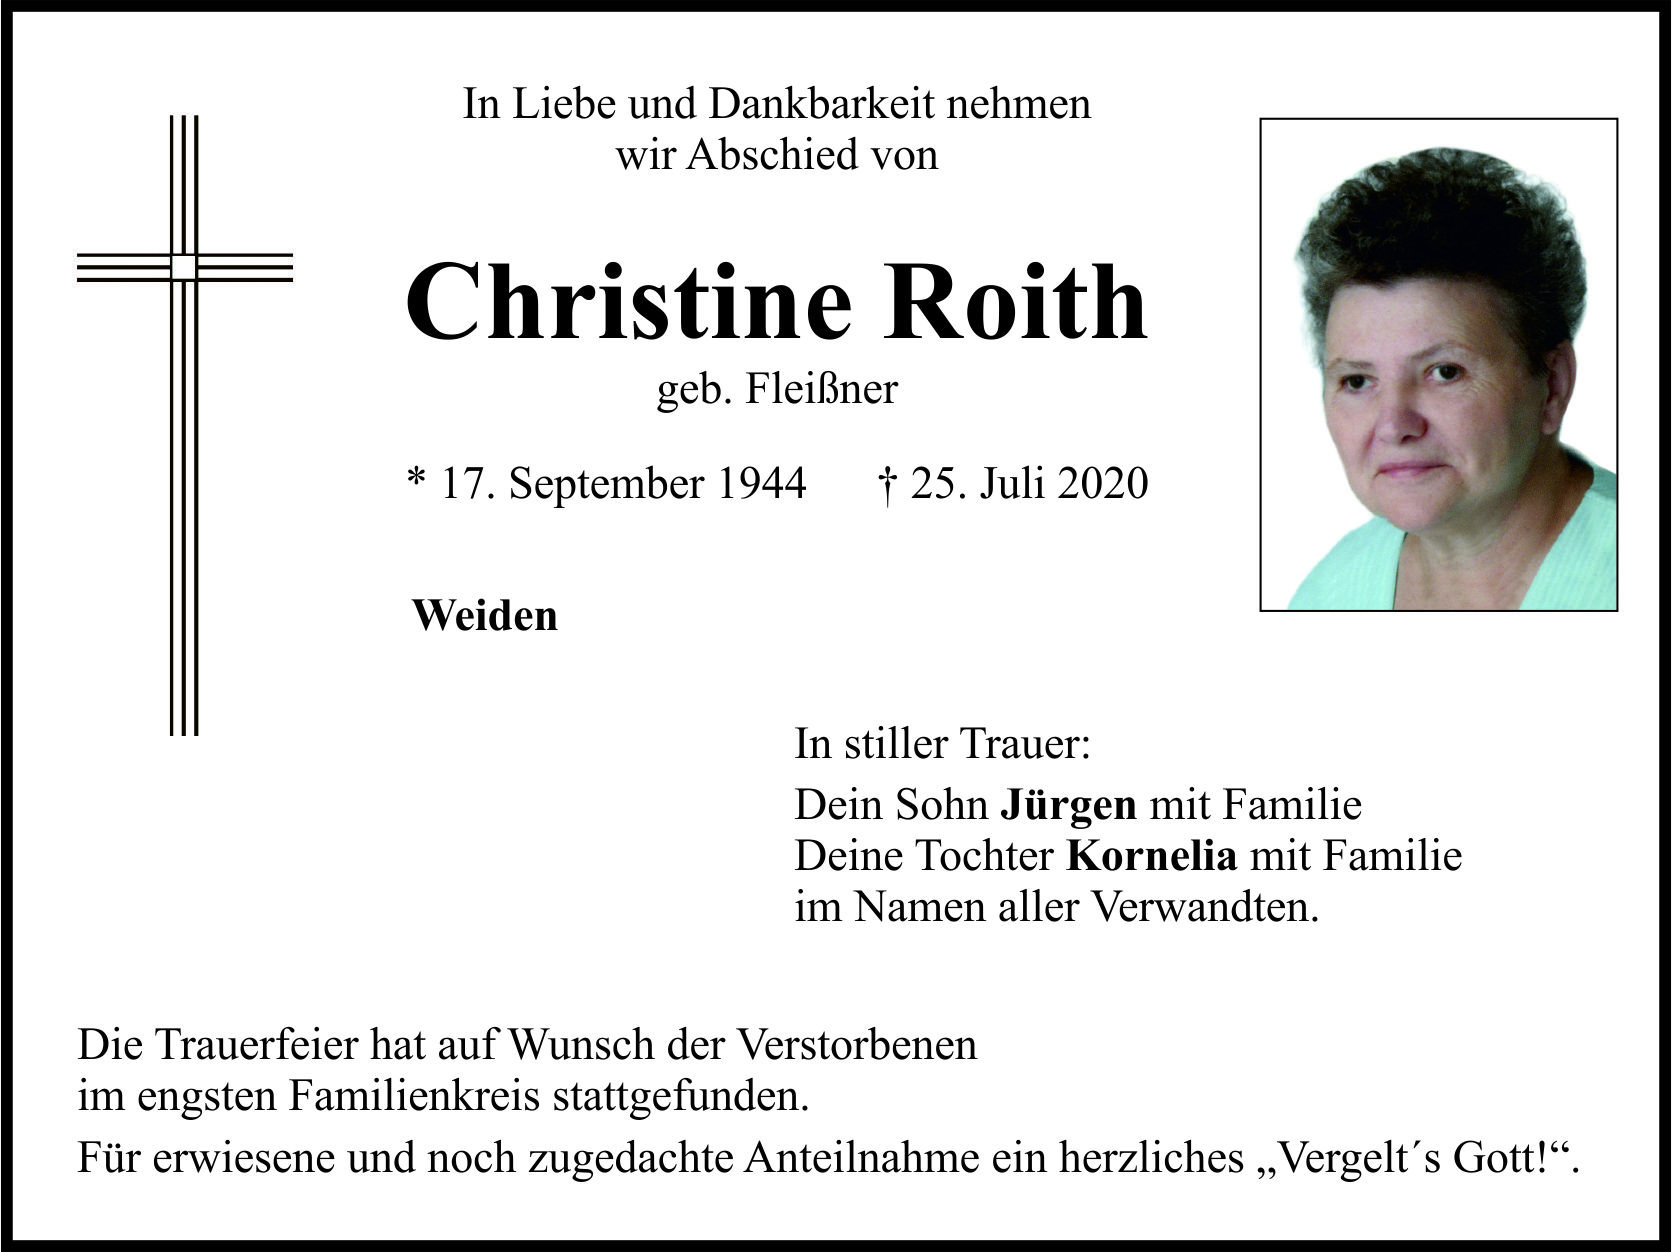 Traueranzeige Christine Roith, Weiden